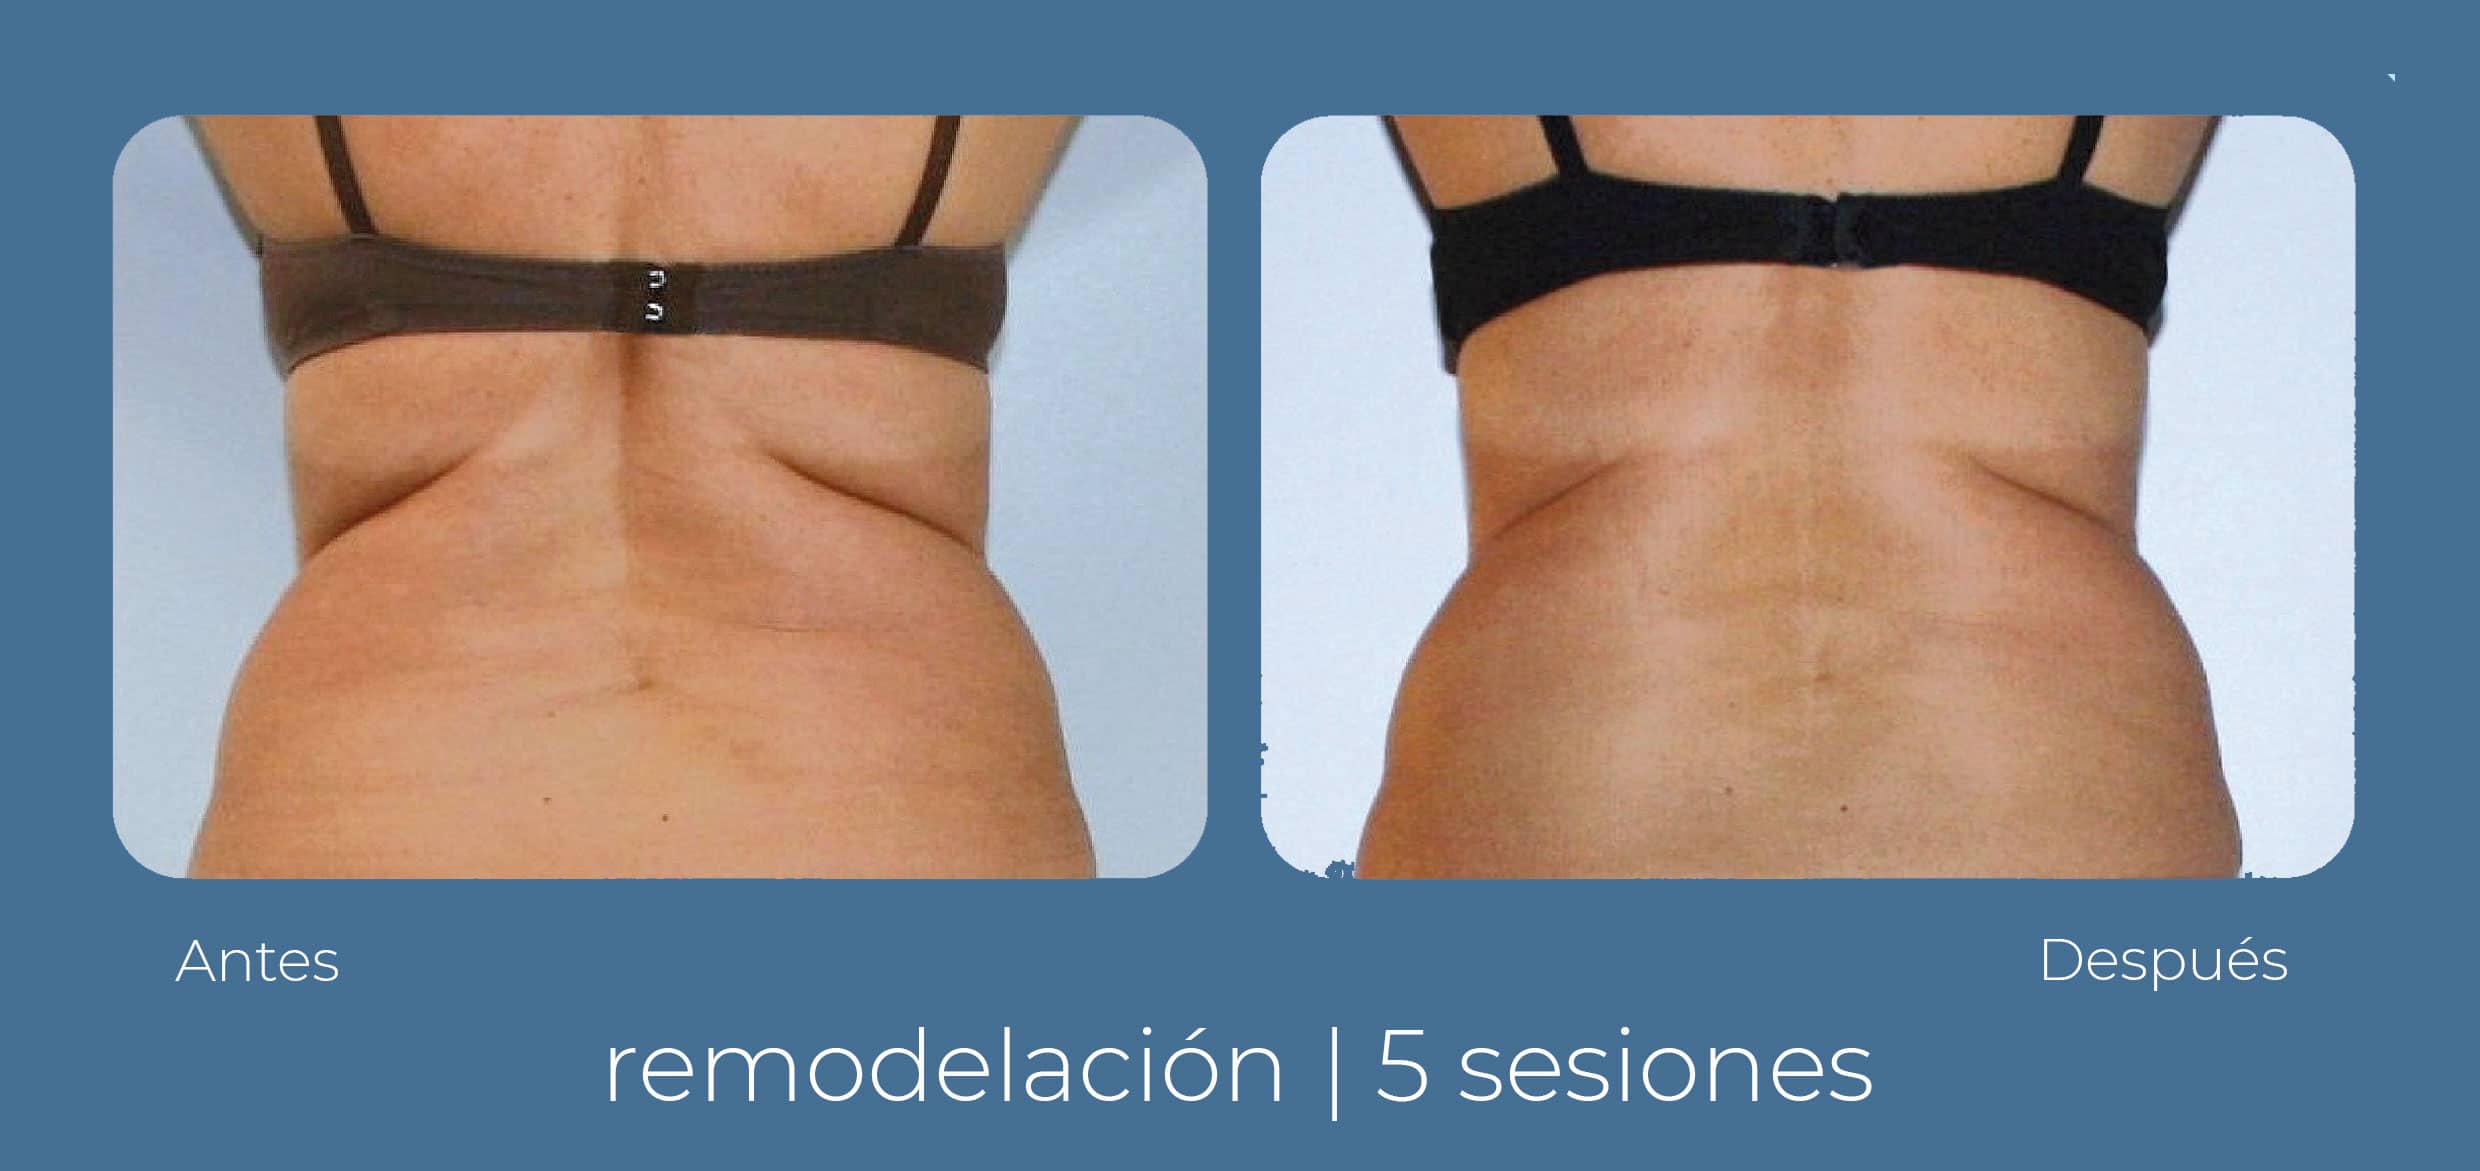 Vista dorsal del antes y después radiofrecuencia INDIBA corporal, realizada por el equipo de Clínica Fernández Blanco.